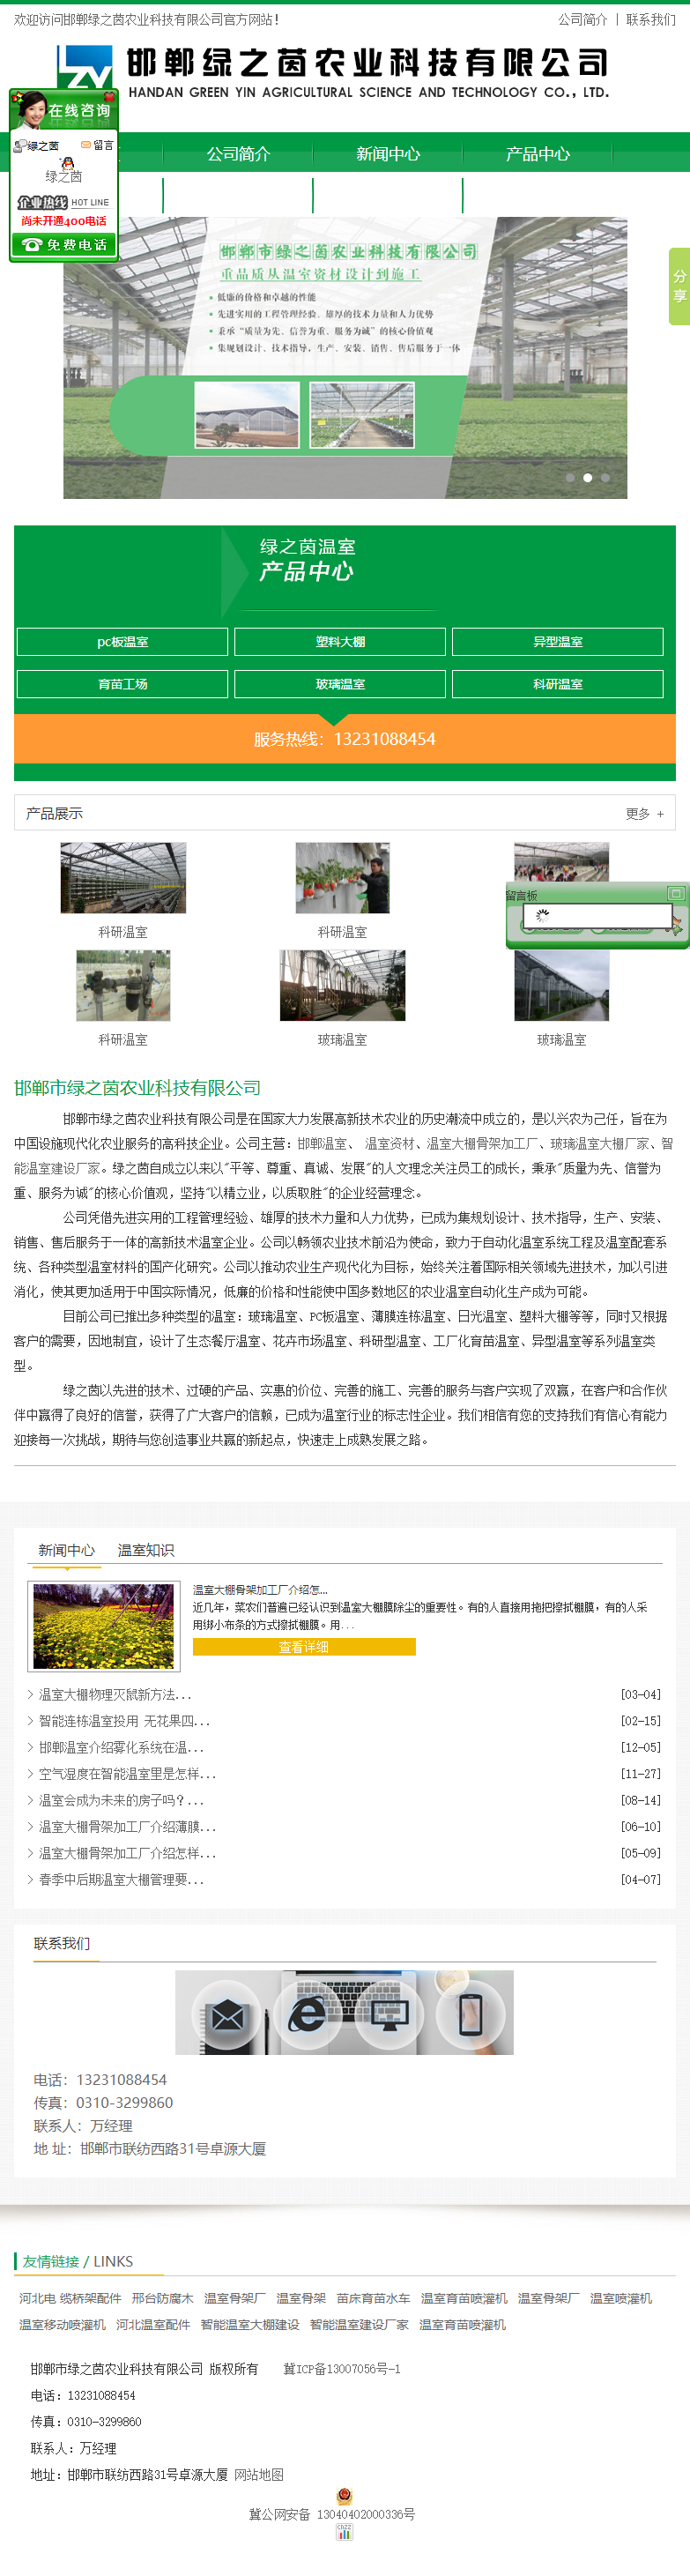 邯郸市绿之茵农业科技有限公司网站案例